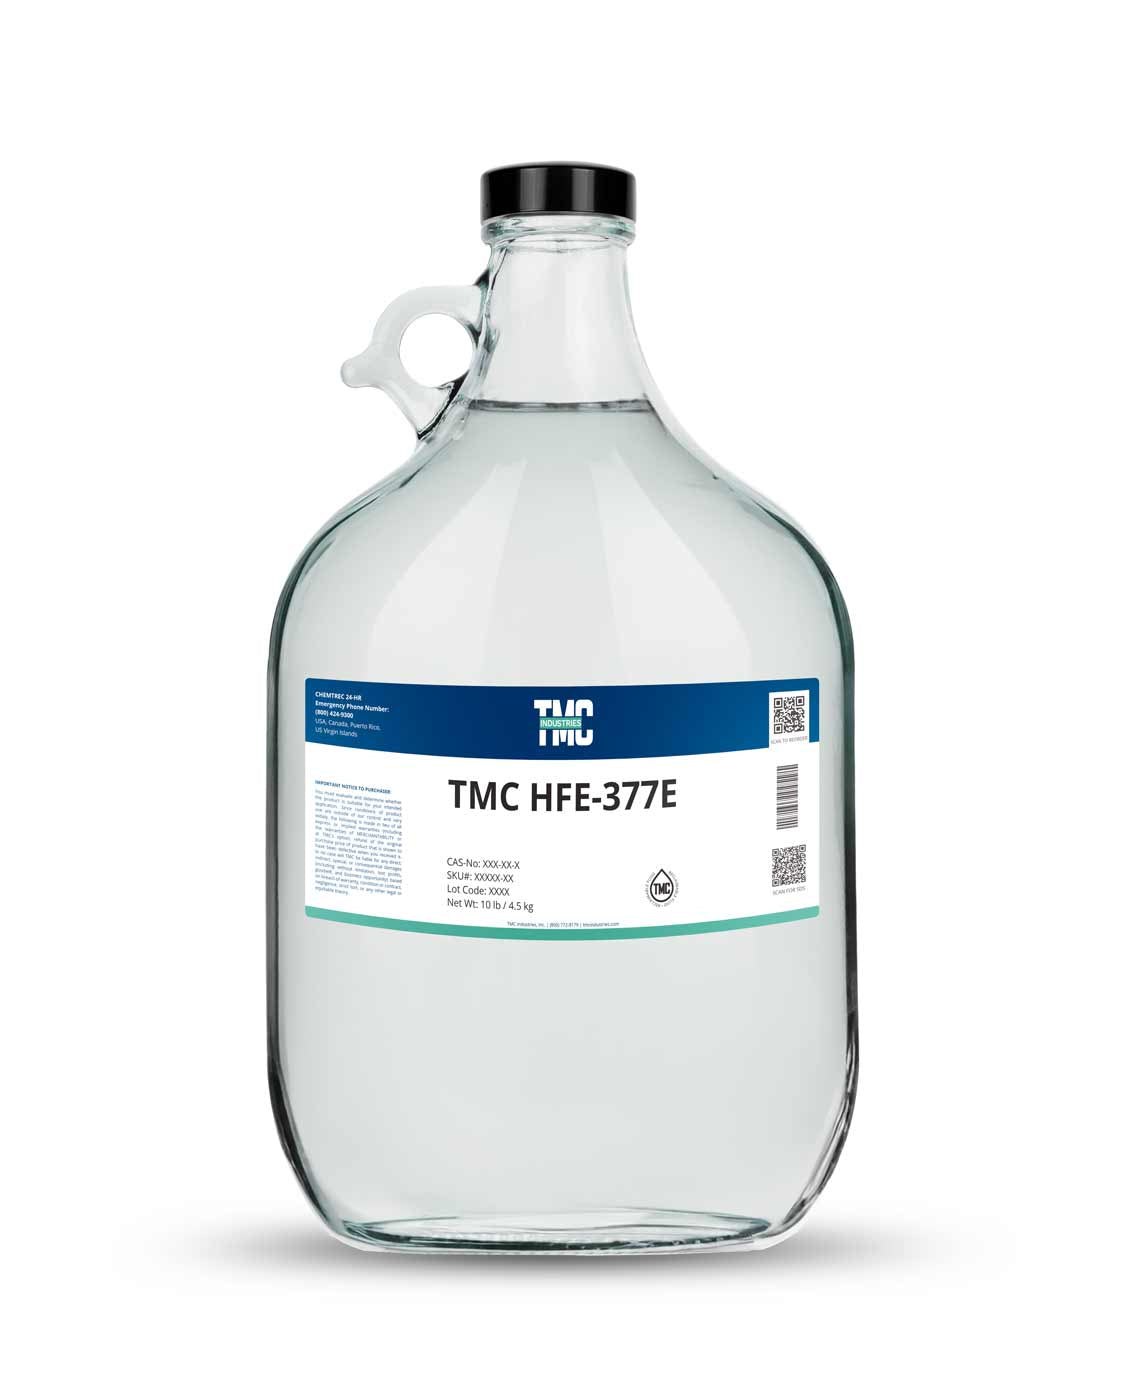 TMC HFE-377E